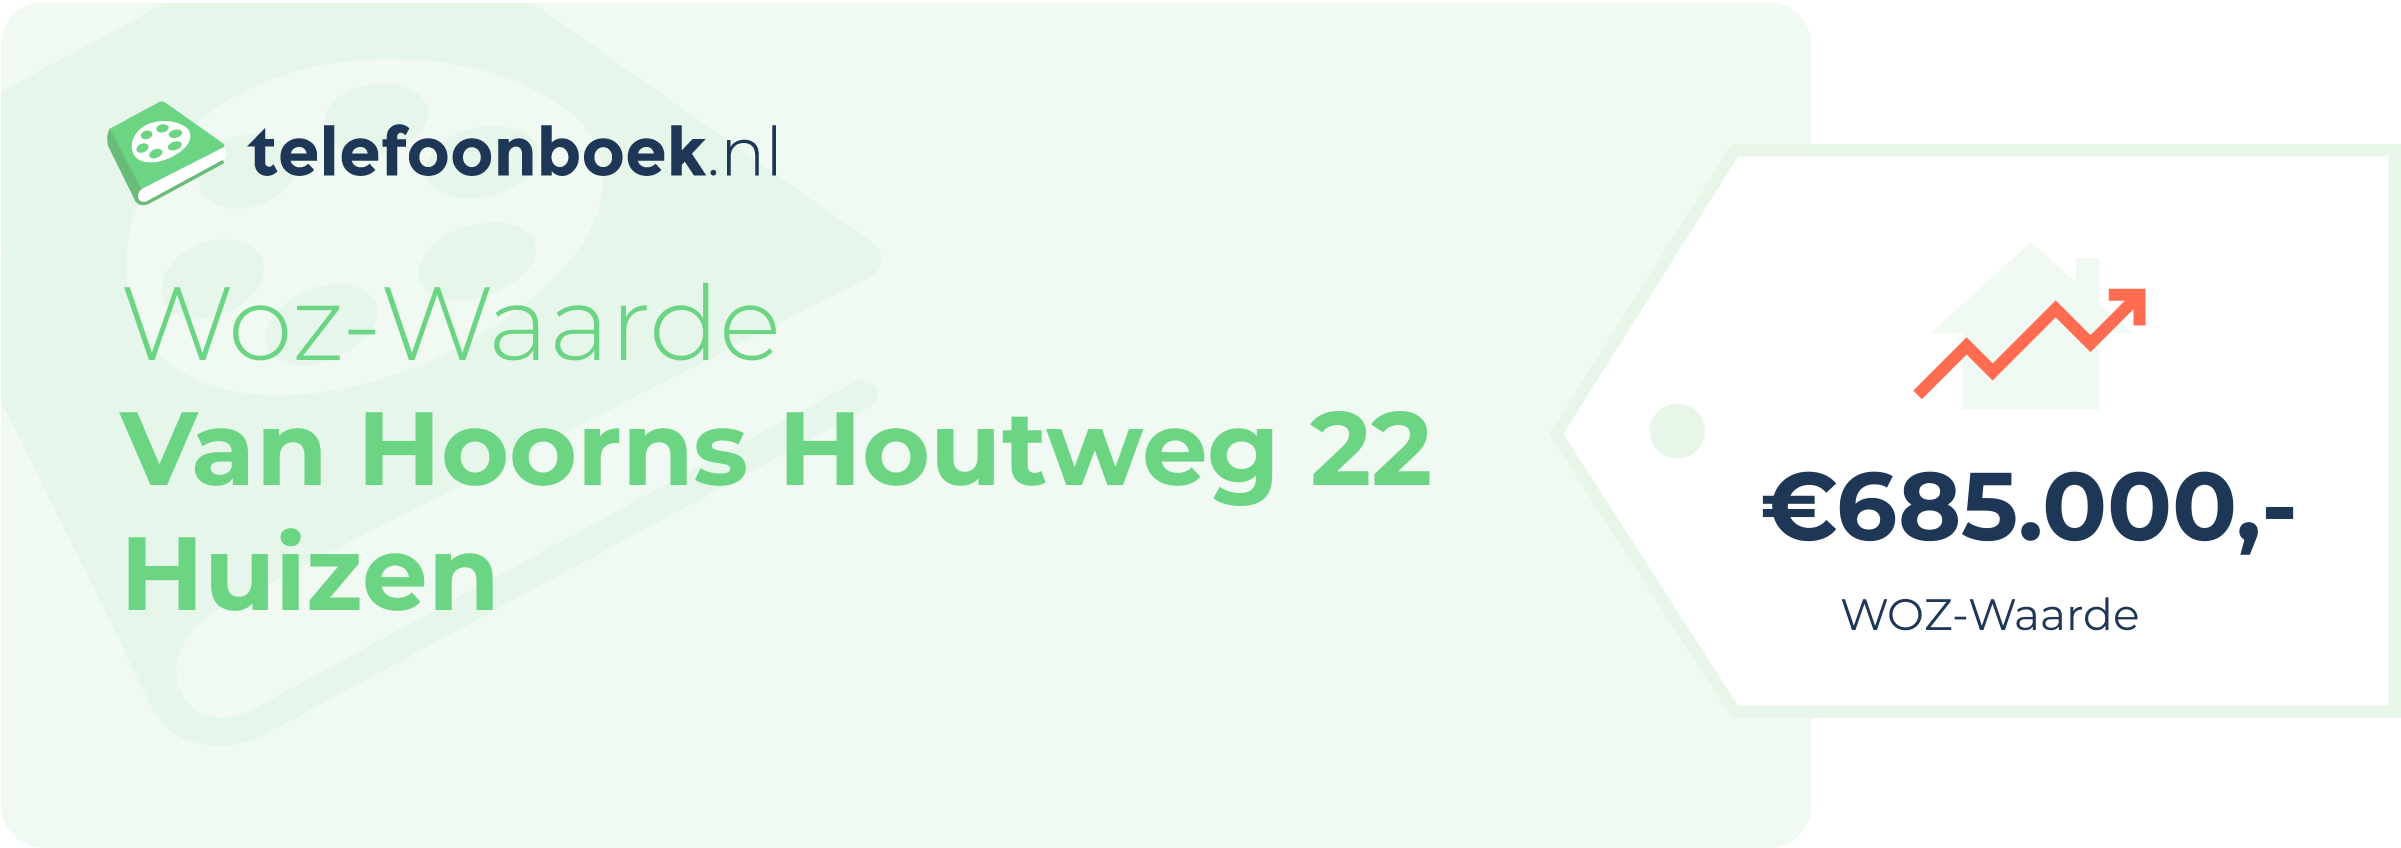 WOZ-waarde Van Hoorns Houtweg 22 Huizen